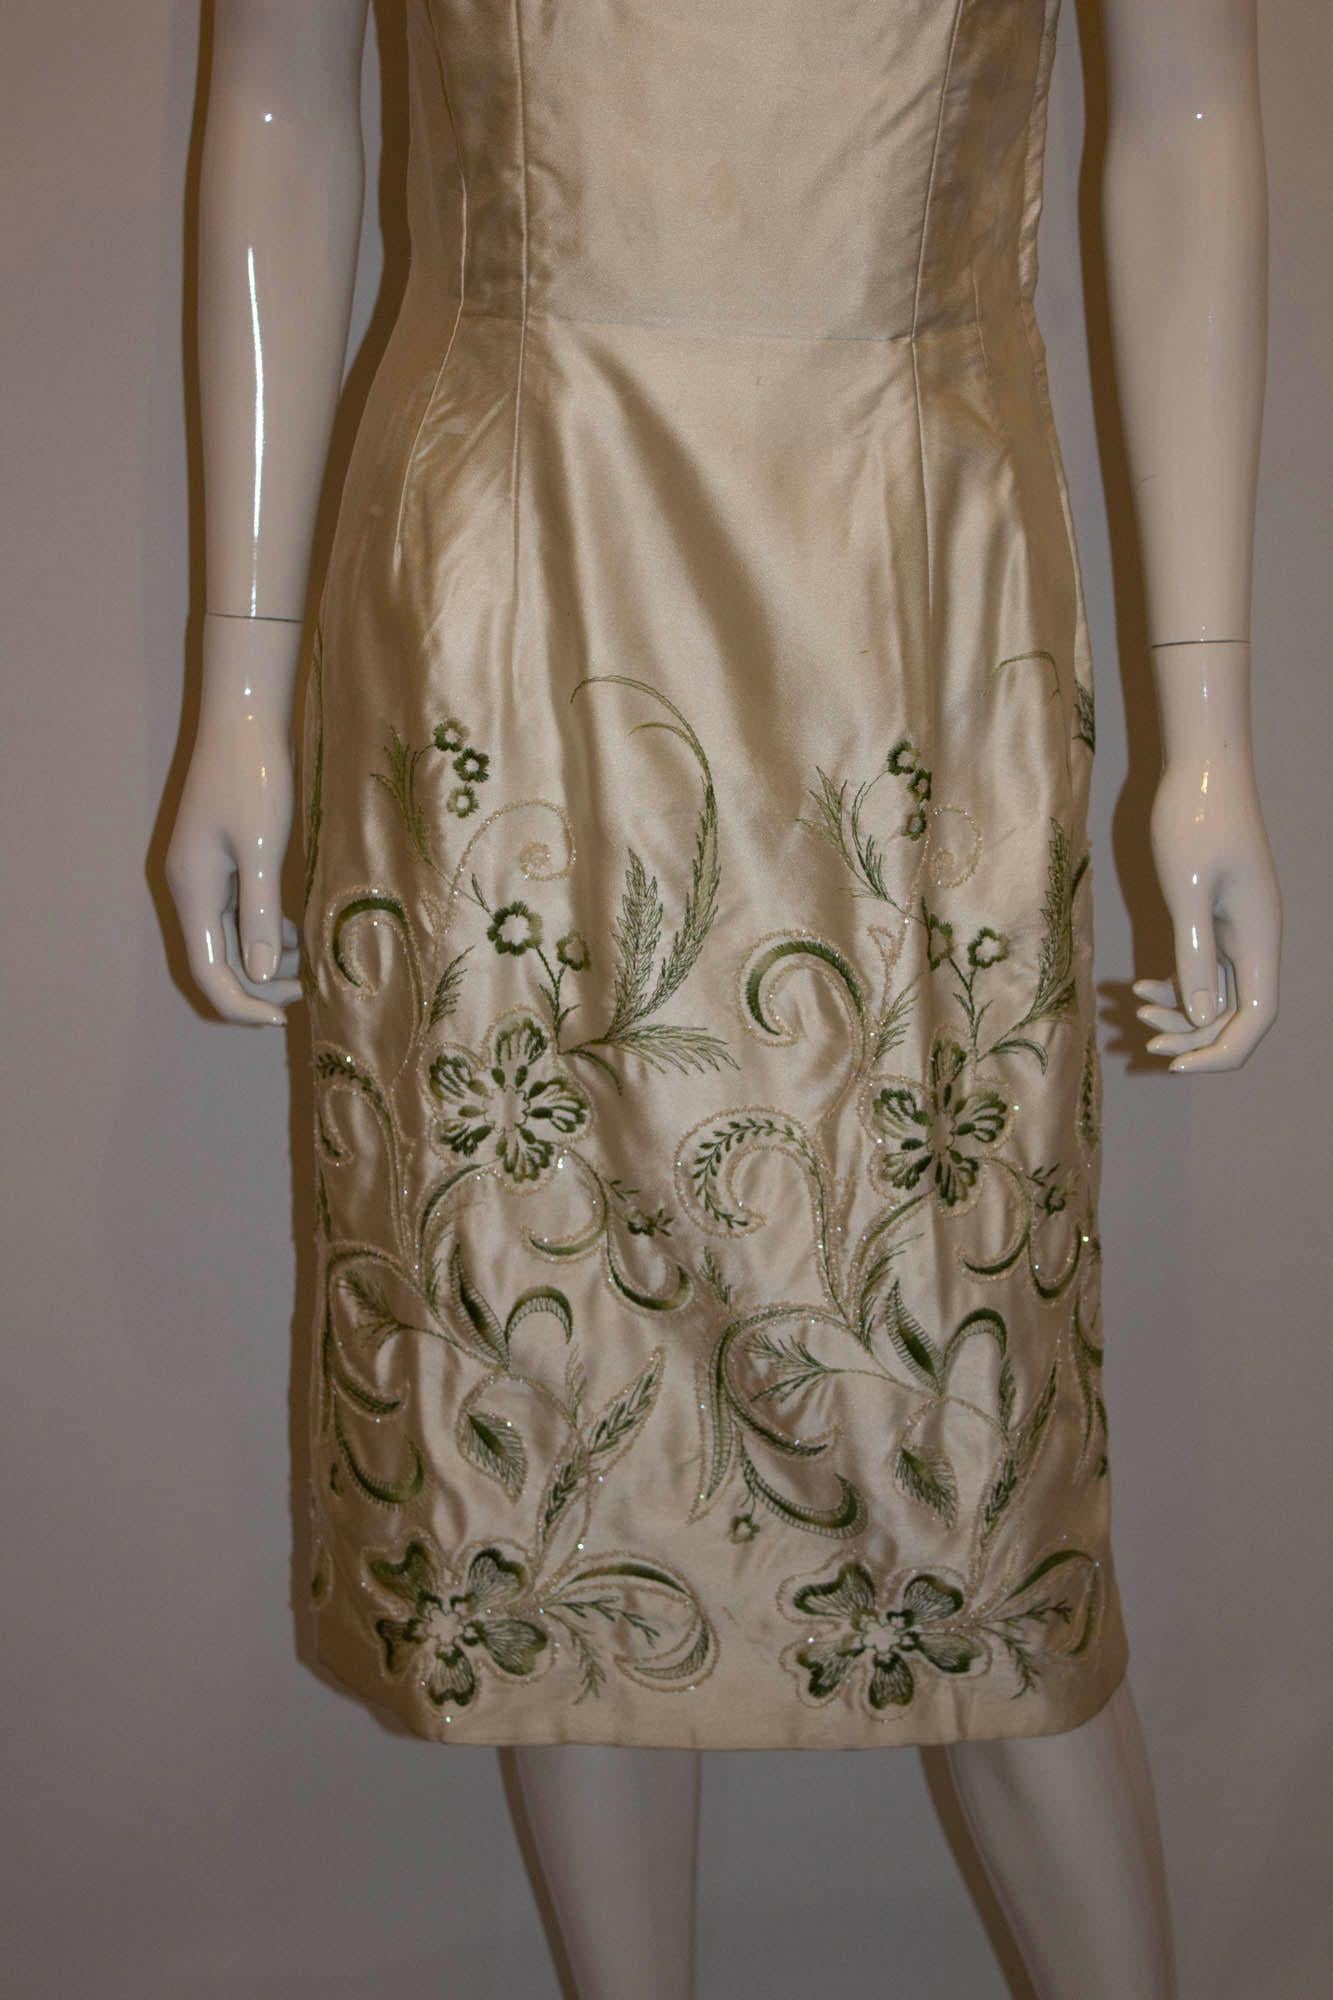 Une robe de cocktail vintage chic signée Ladycourt of London. La robe est dotée d'une armature interne (qui peut être retirée), d'un magnifique motif floral et d'une ouverture zippée sur le côté.
Poitrine 36'', longueur 44''.